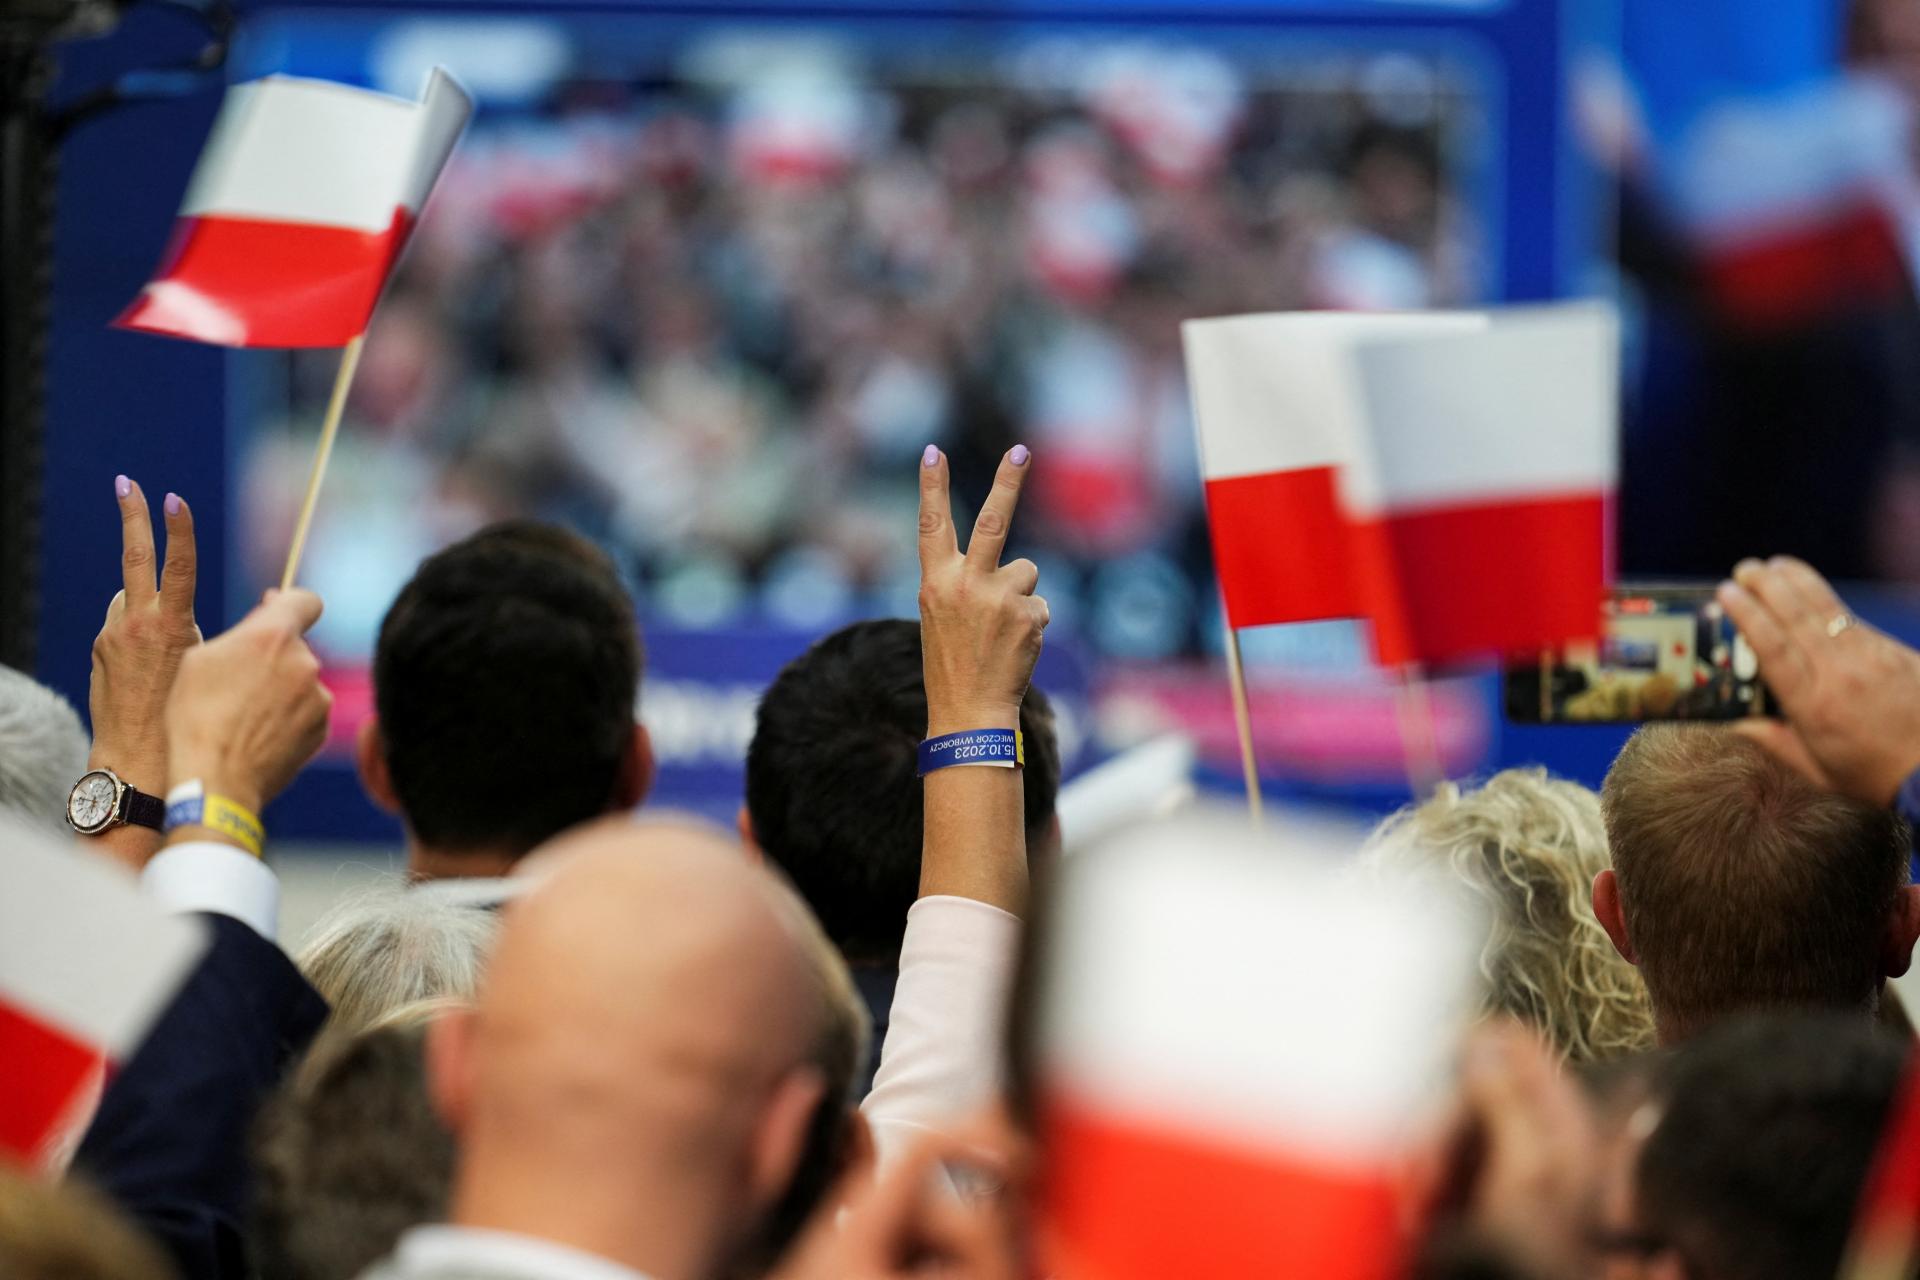 Reakcie poľských médií: Opozícia vyhrala nad veľmi ťažkým rivalom, strašenie nezafungovalo